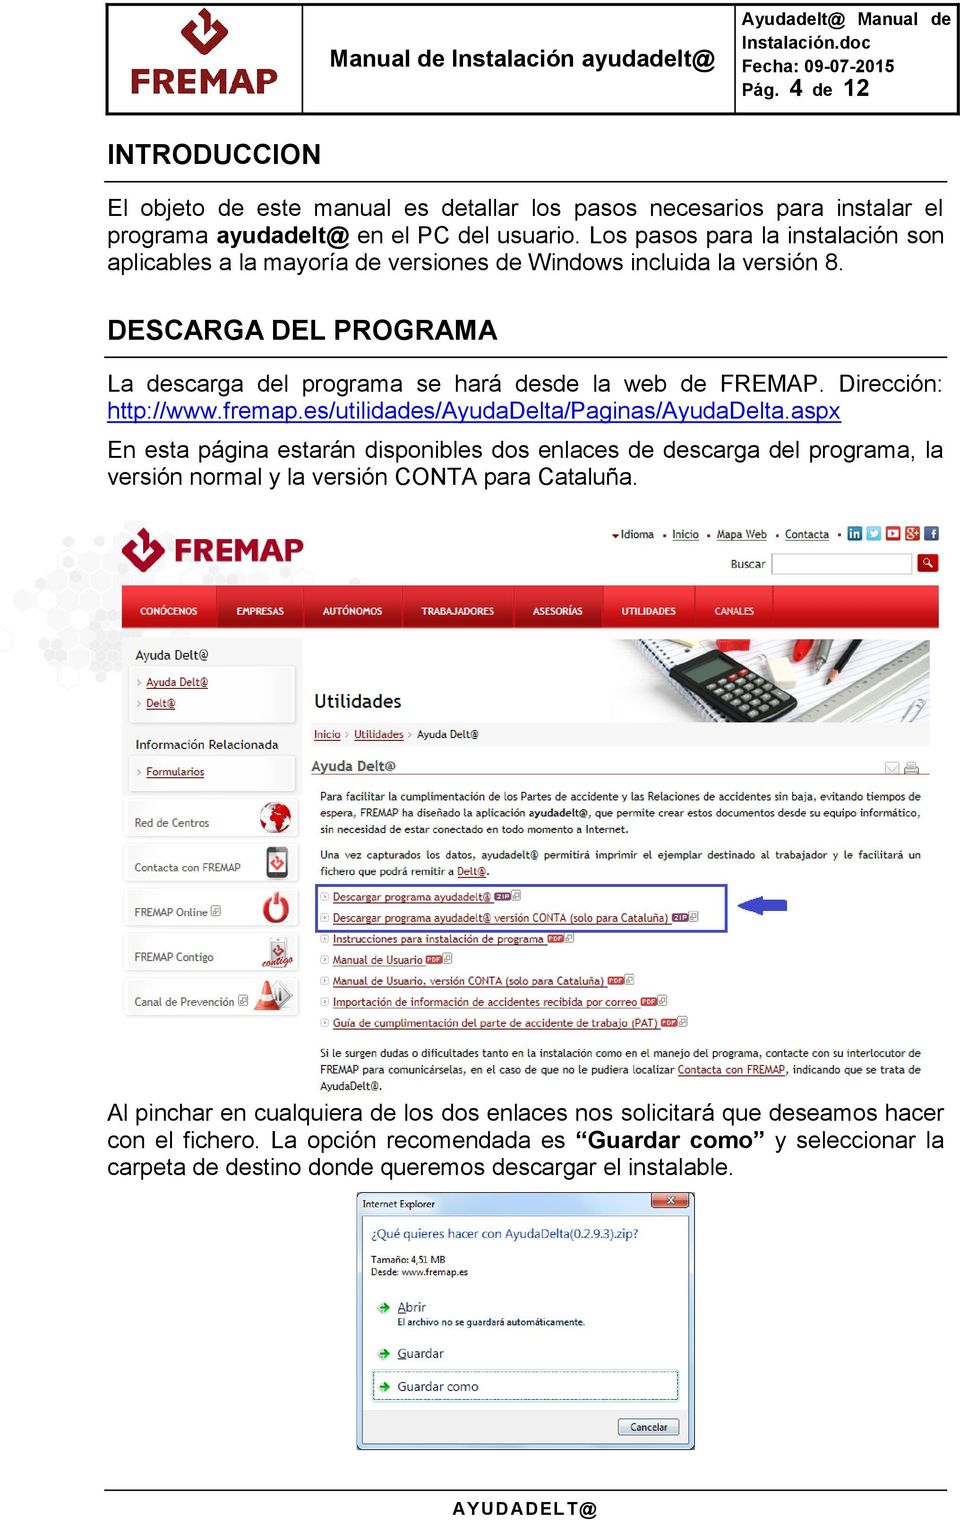 Dirección: http://www.fremap.es/utilidades/ayudadelta/paginas/ayudadelta.